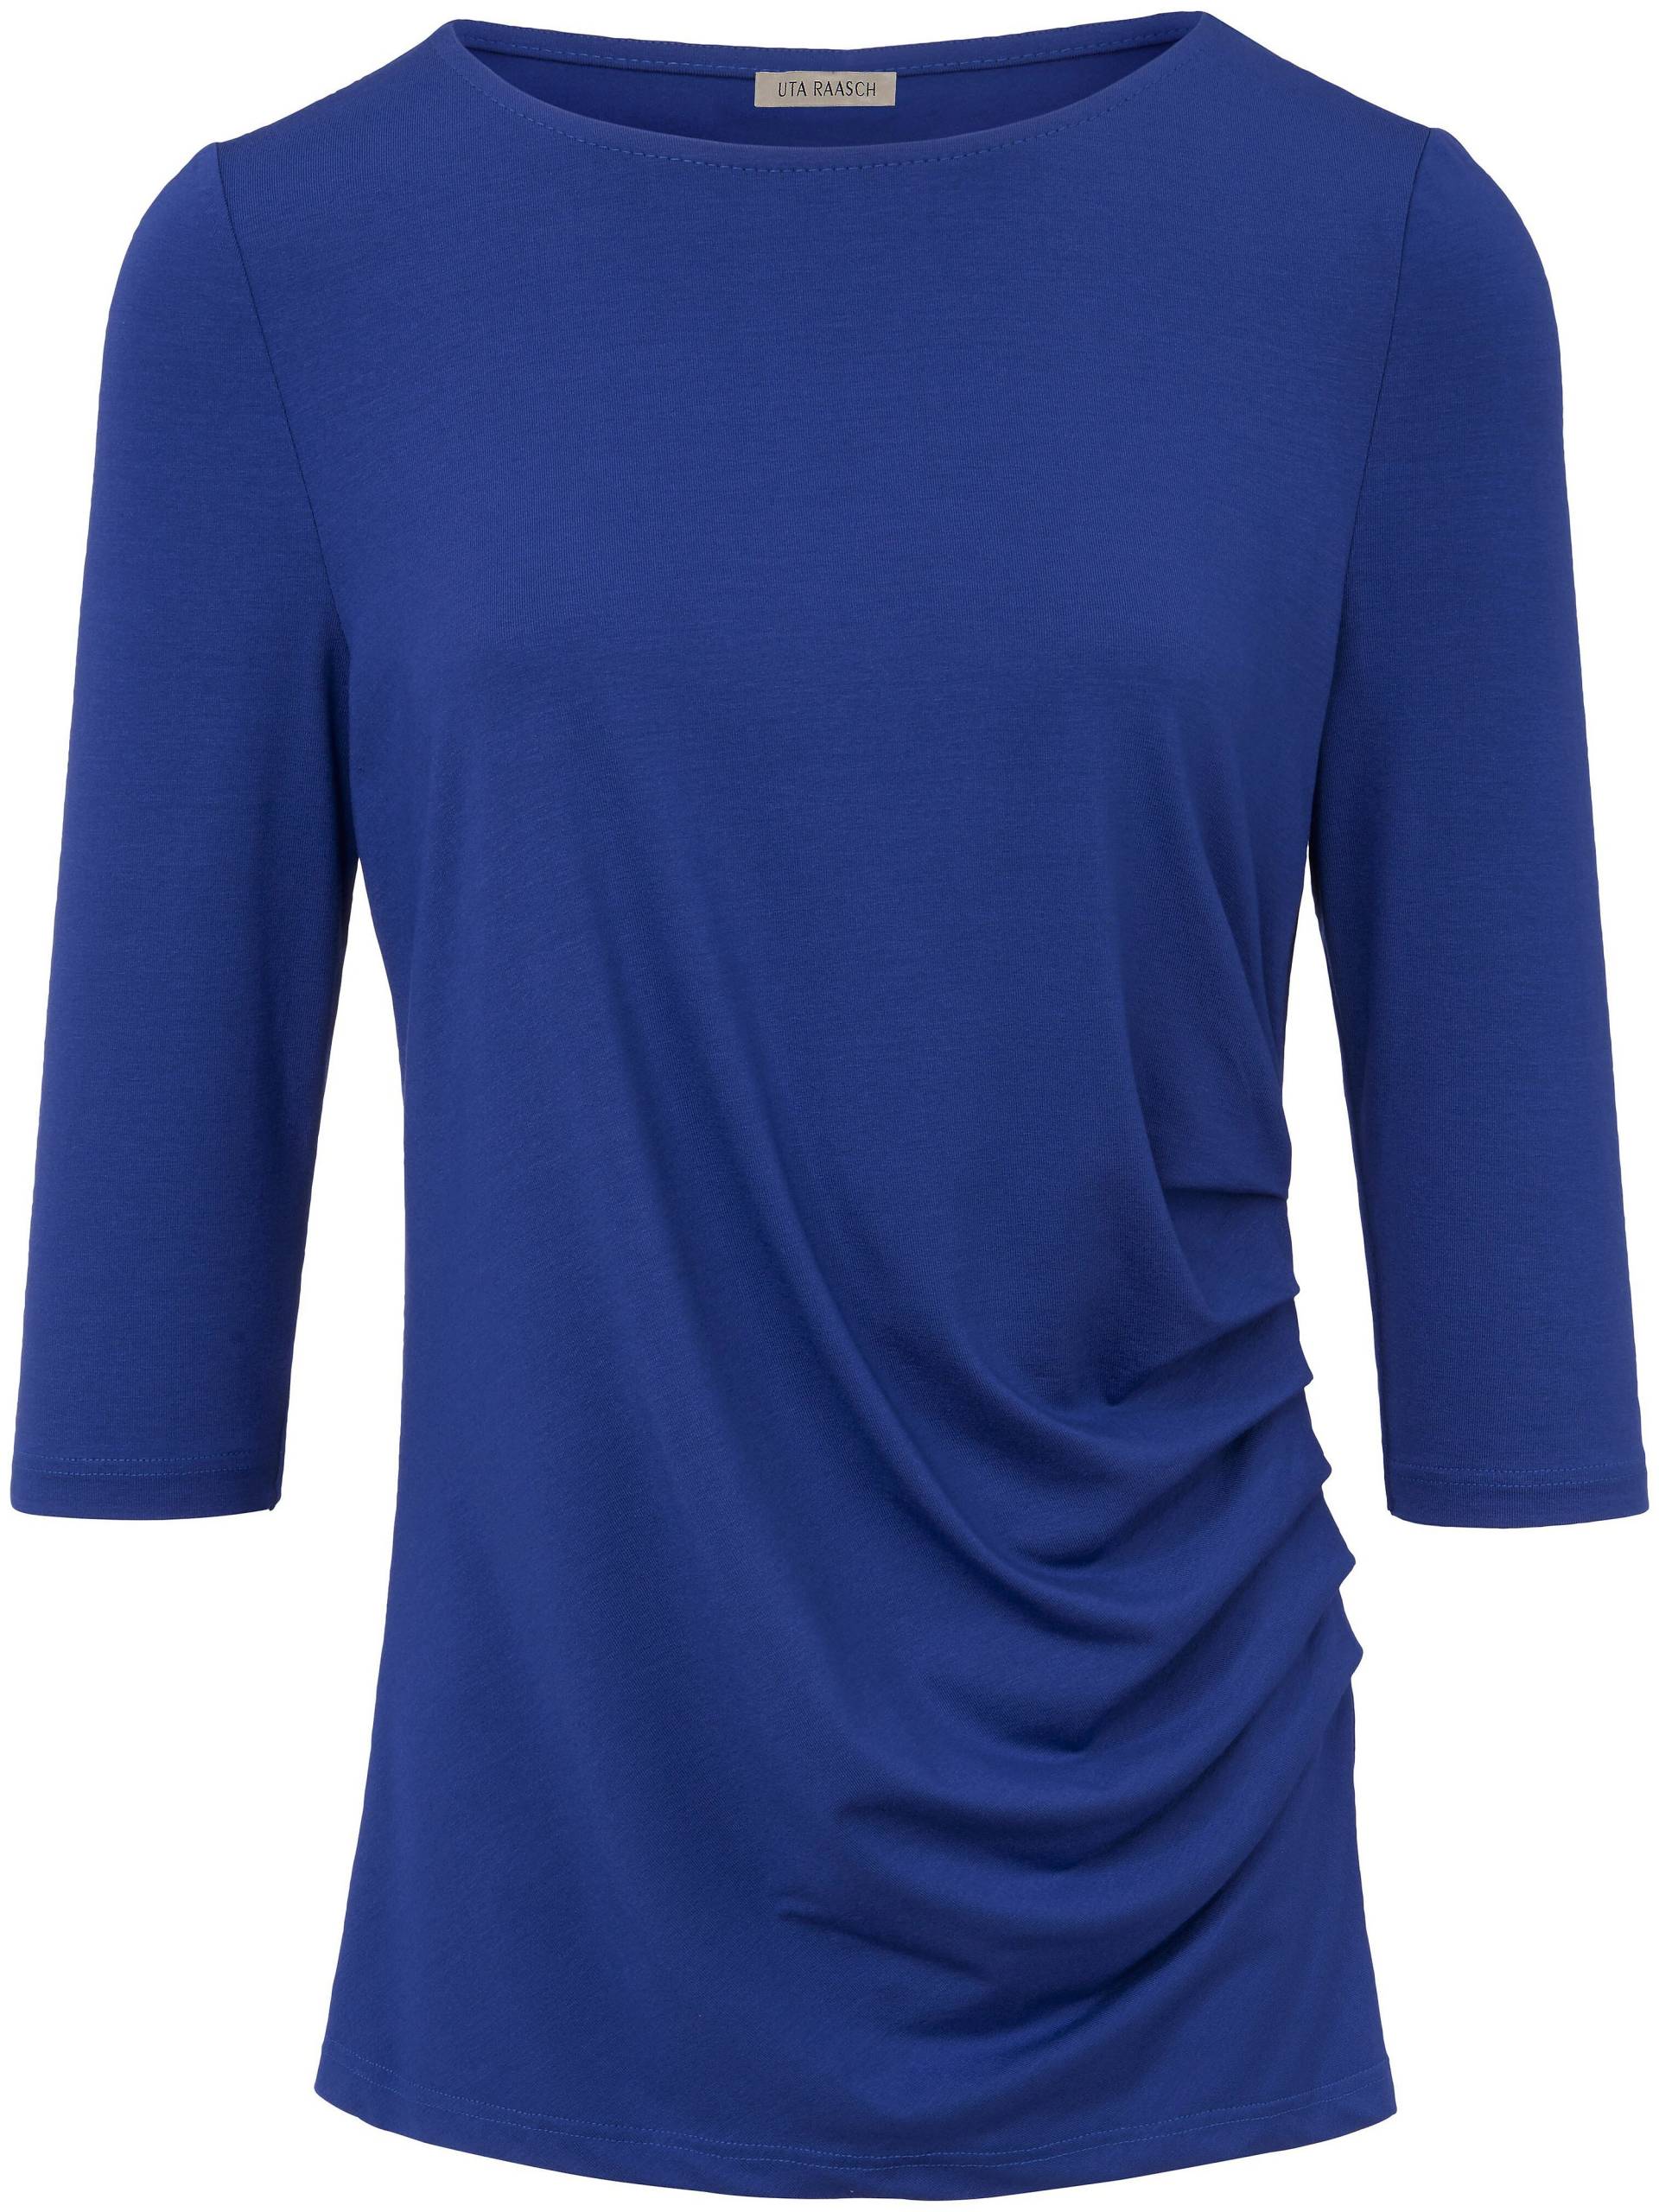 Rundhals-Shirt 3/4-Arm Uta Raasch blau Größe: 44 von Uta Raasch